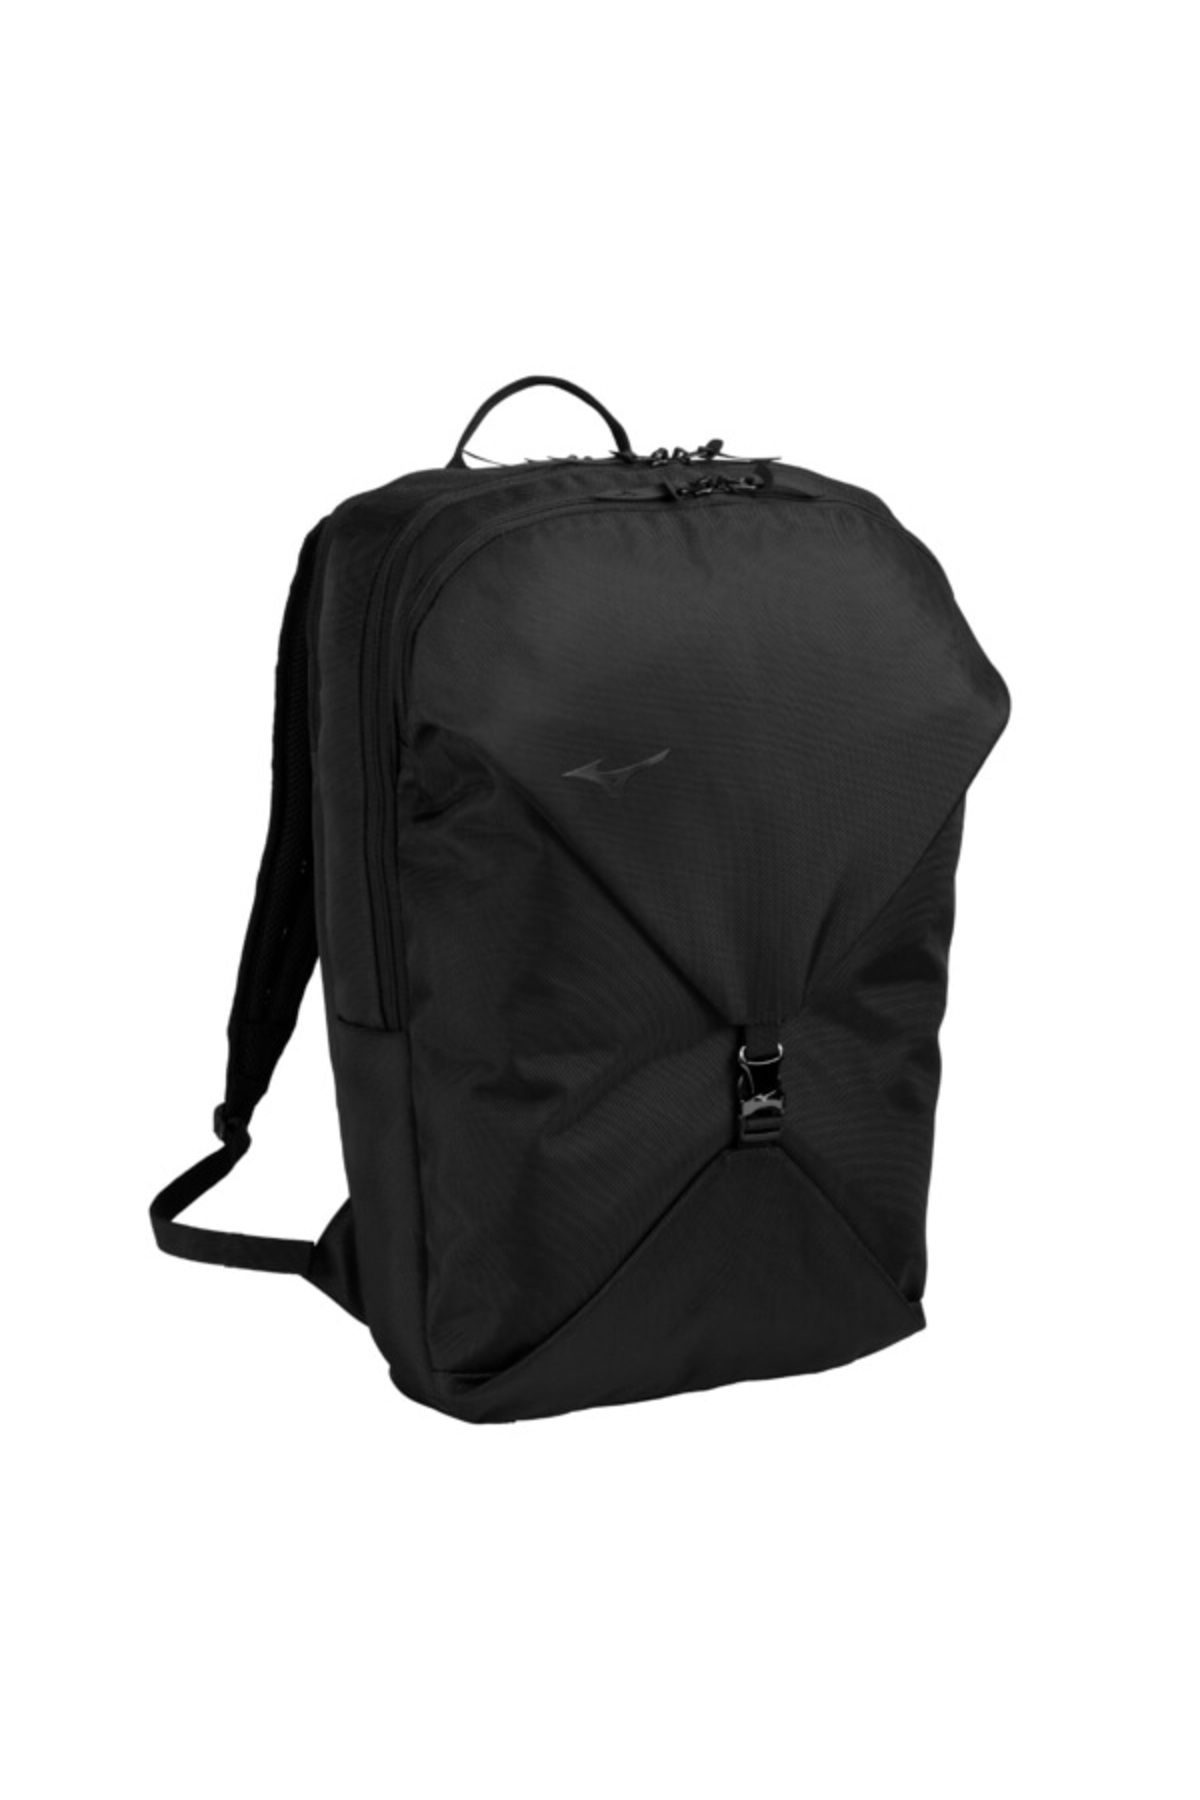 Mizuno Backpack 25 Unisex Sırt Çantası Siyah